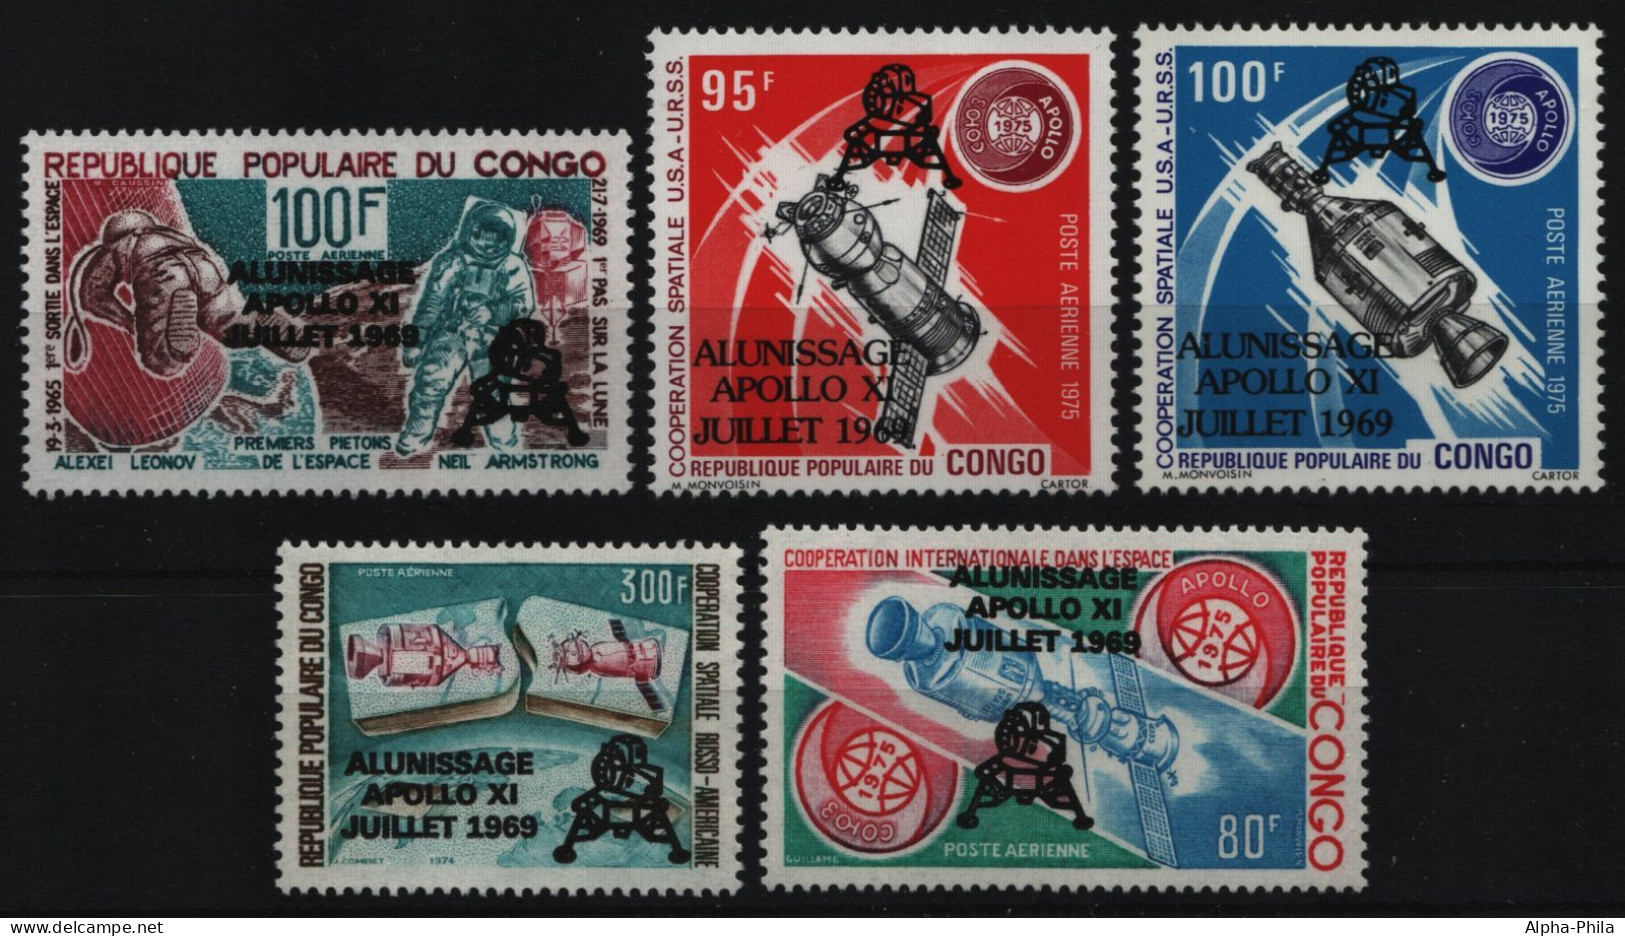 Kongo-Brazzaville 1979 - Mi-Nr. 702-706 ** - MNH - Raumfahrt / Space - Ungebraucht